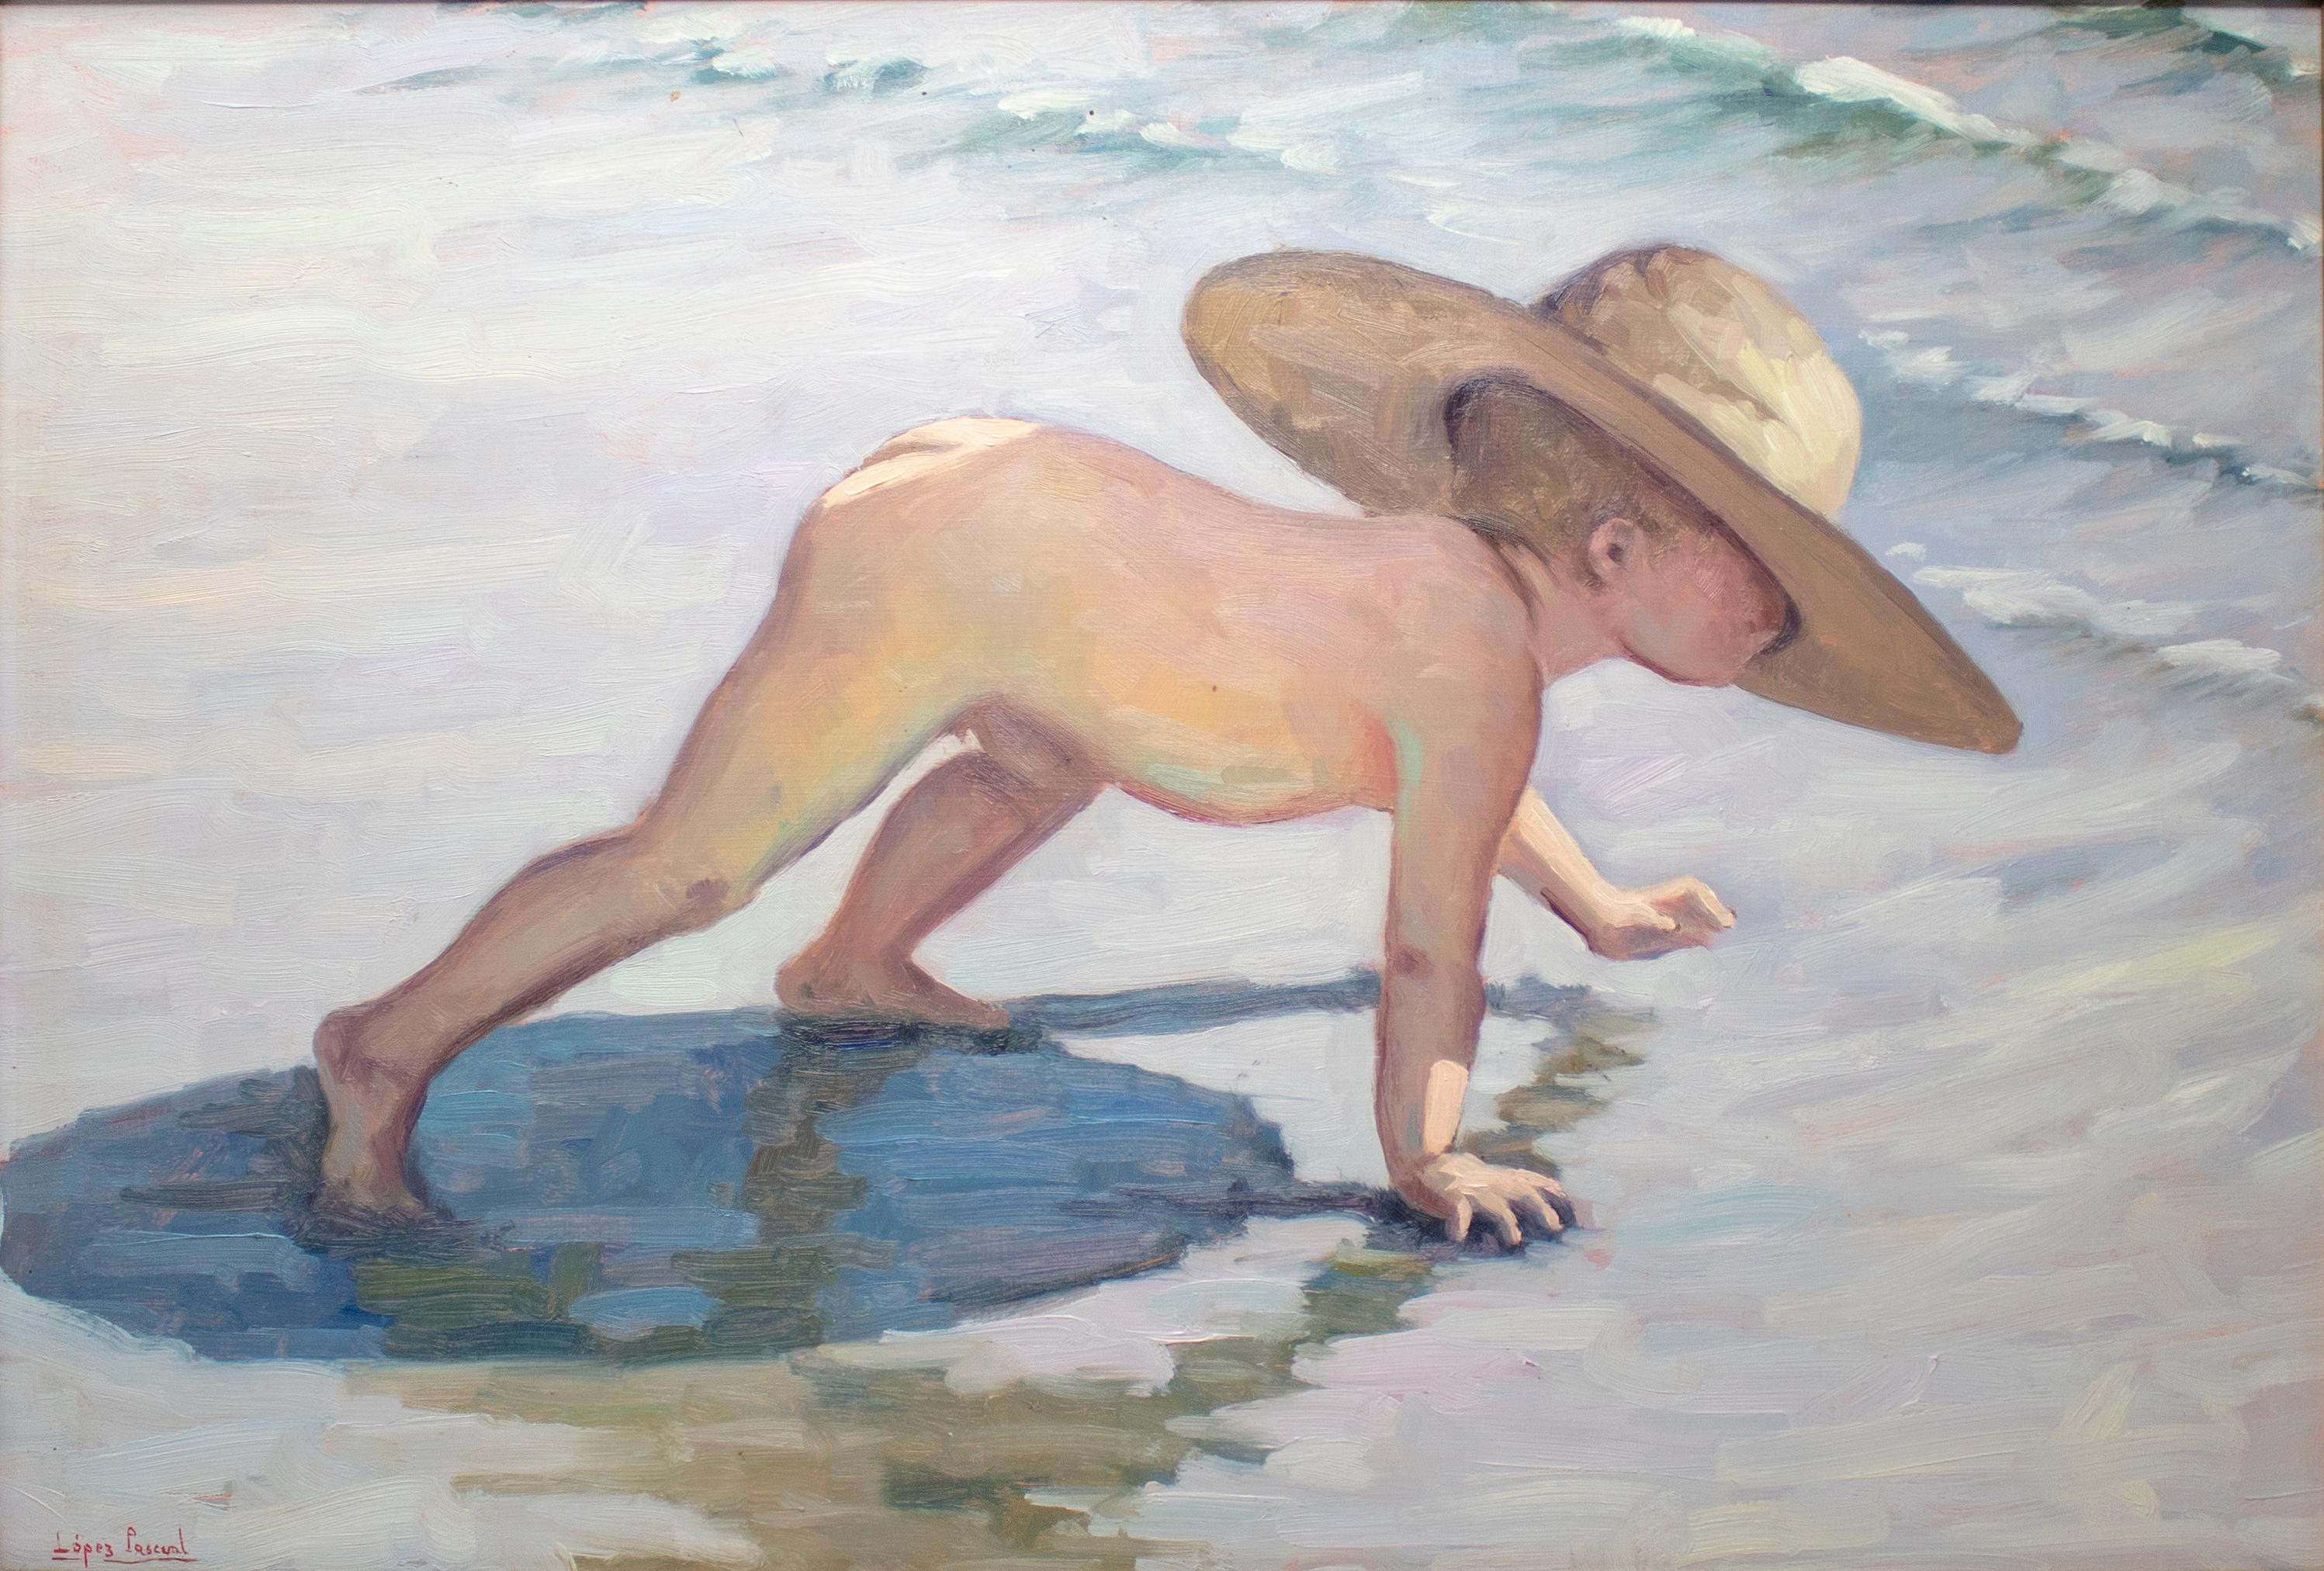 1950er Jahre López Pascual, Öl auf Leinwand, Junge am Strand.

Abmessungen mit Rahmen: 48 x 64,5 x 5,5.